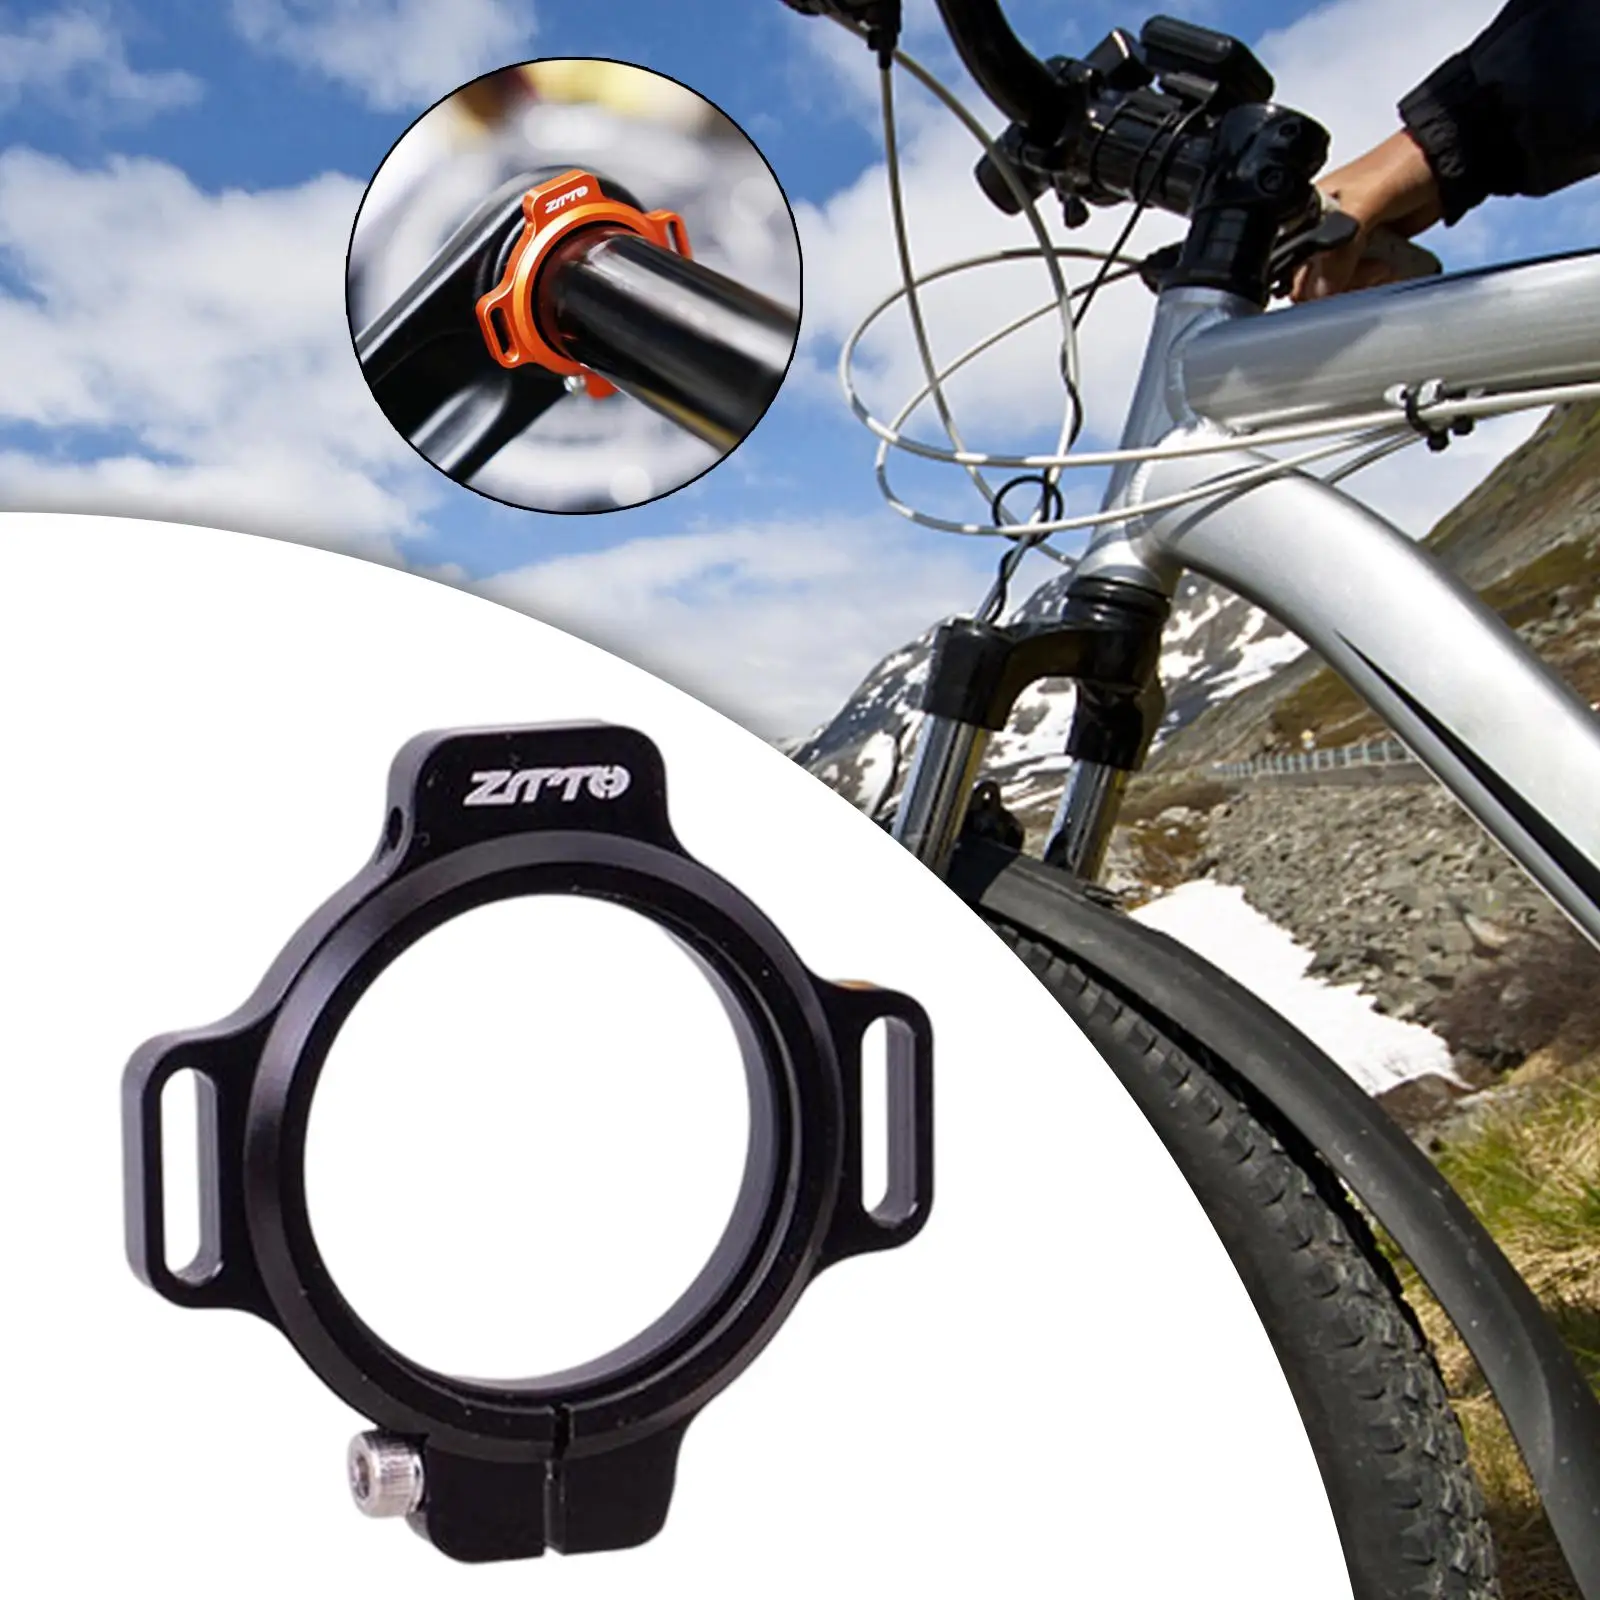 Bottom Bracket Adjuster Bottom Bracket Preload Adjuster for Dub Cycling Bike Accessories